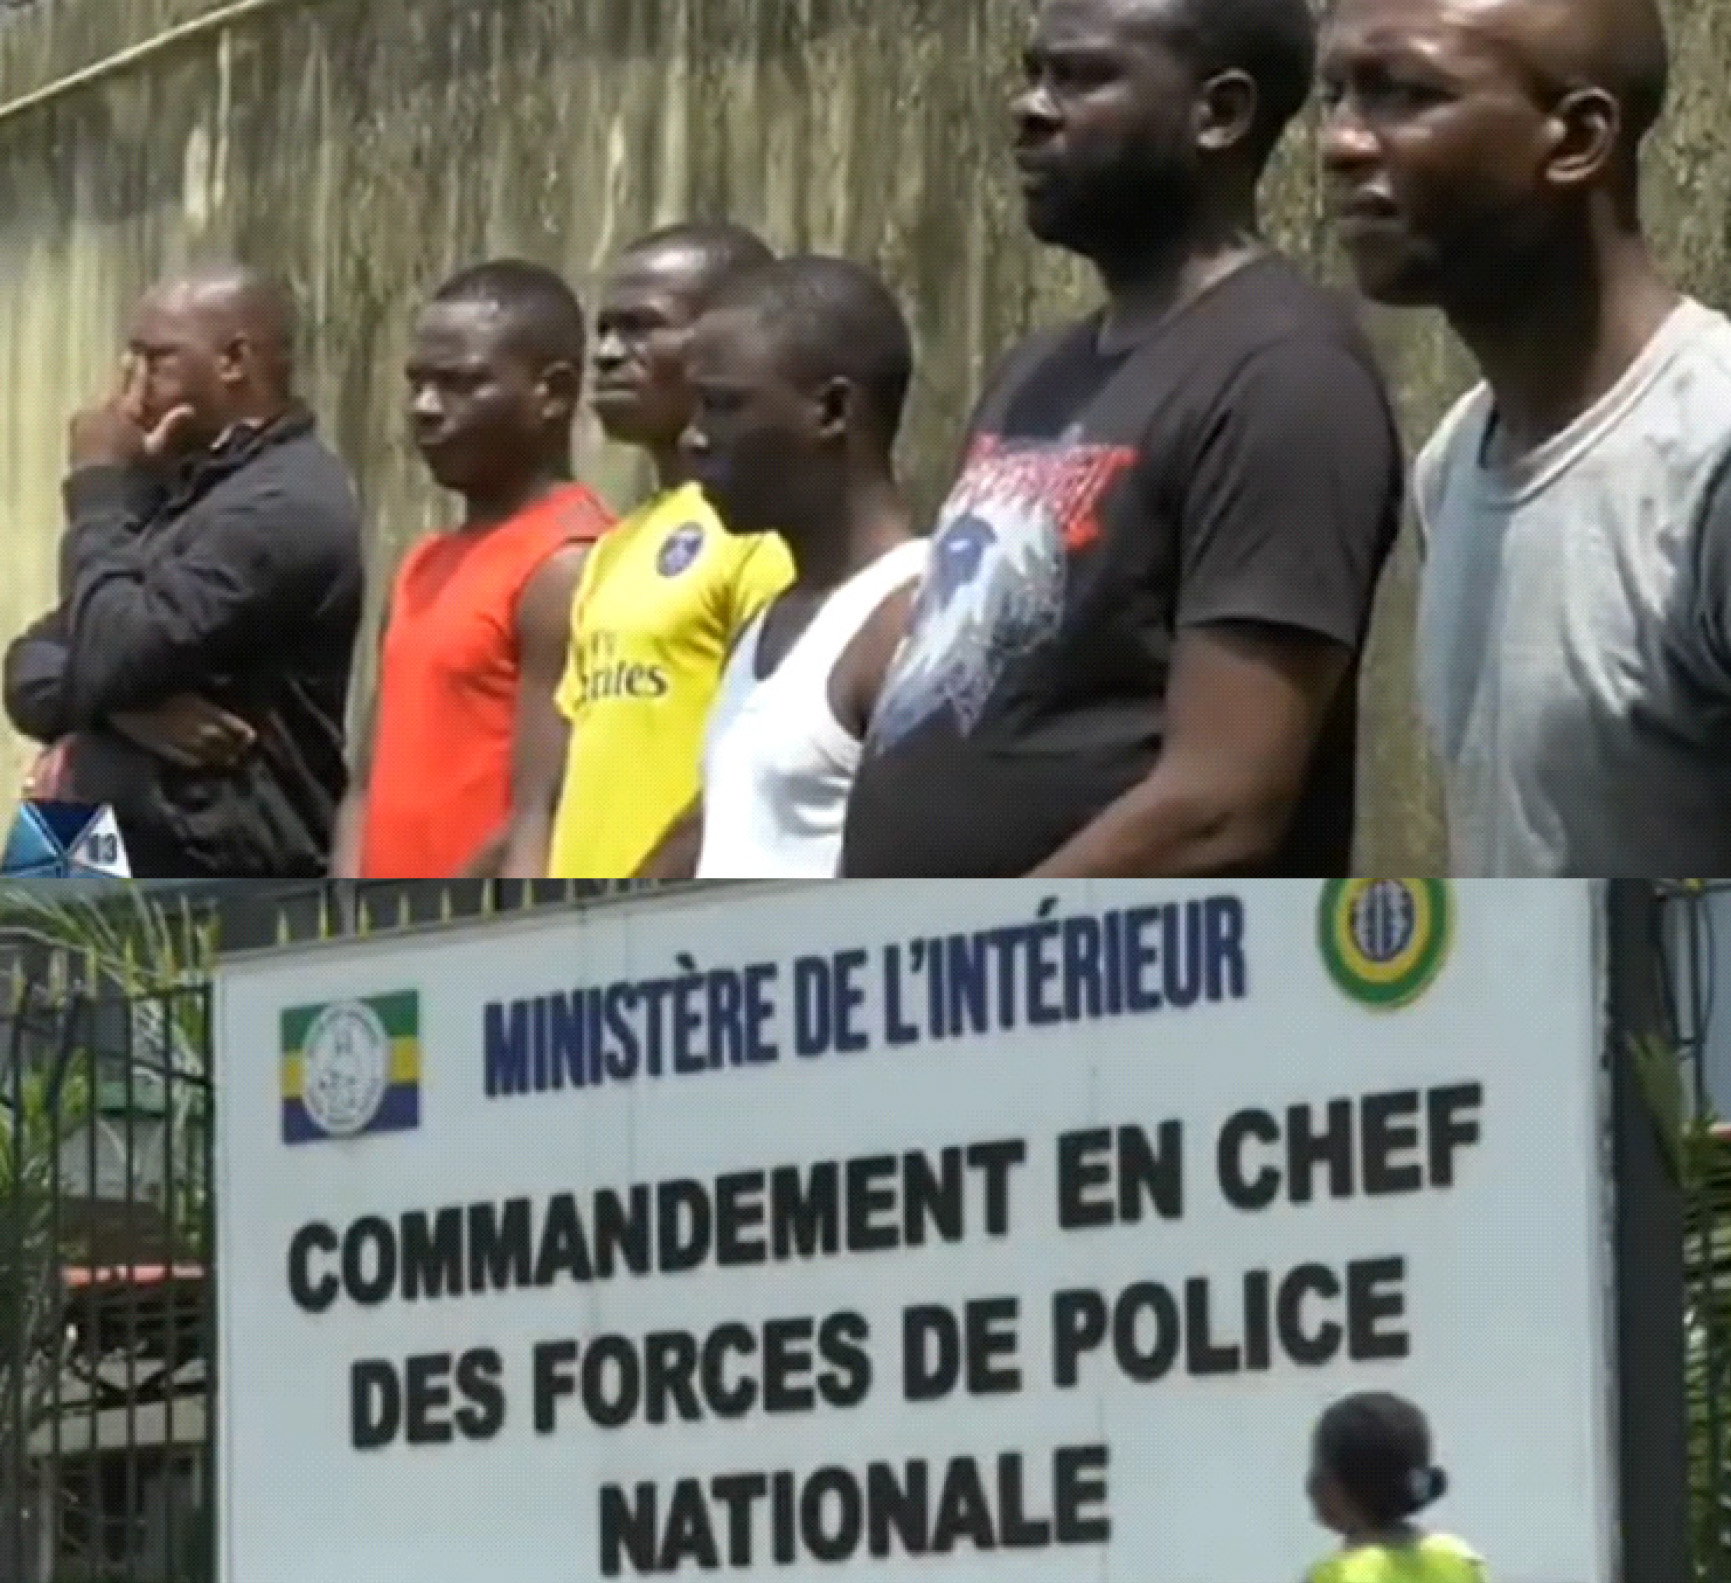 Gabon/ La Honte nationale : six loups déguisés en bergers, des policiers arrêtés pour corruption et extorsion